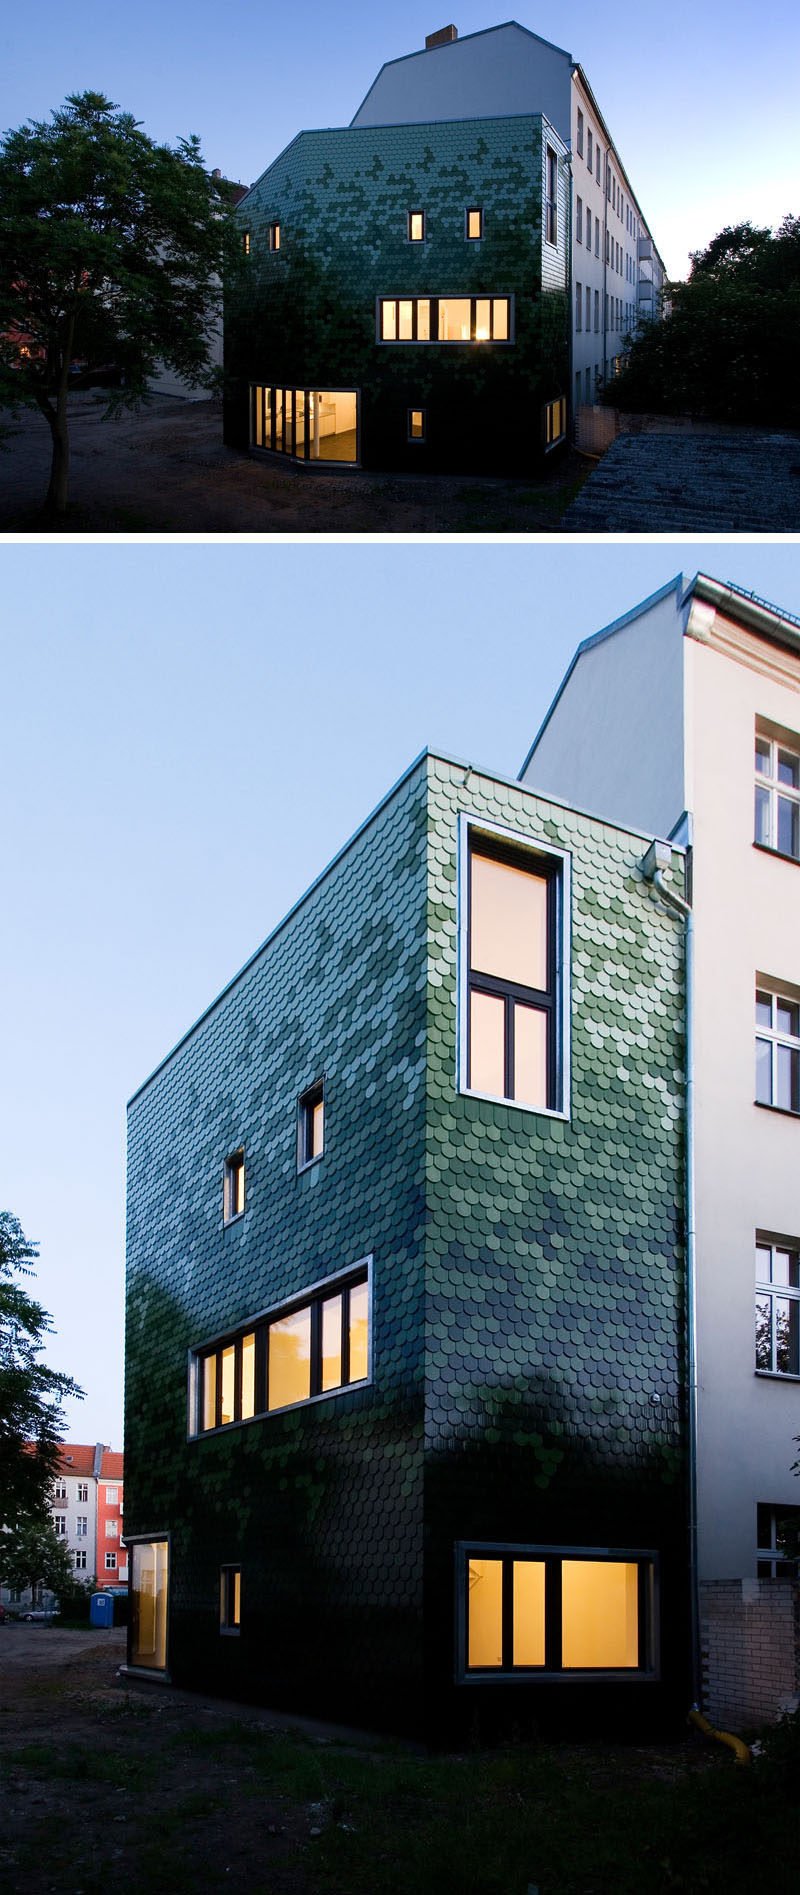 Ý tưởng về vách ngăn nhà - Nhiều sắc thái của tấm lợp xanh bao phủ tòa nhà này ở Berlin